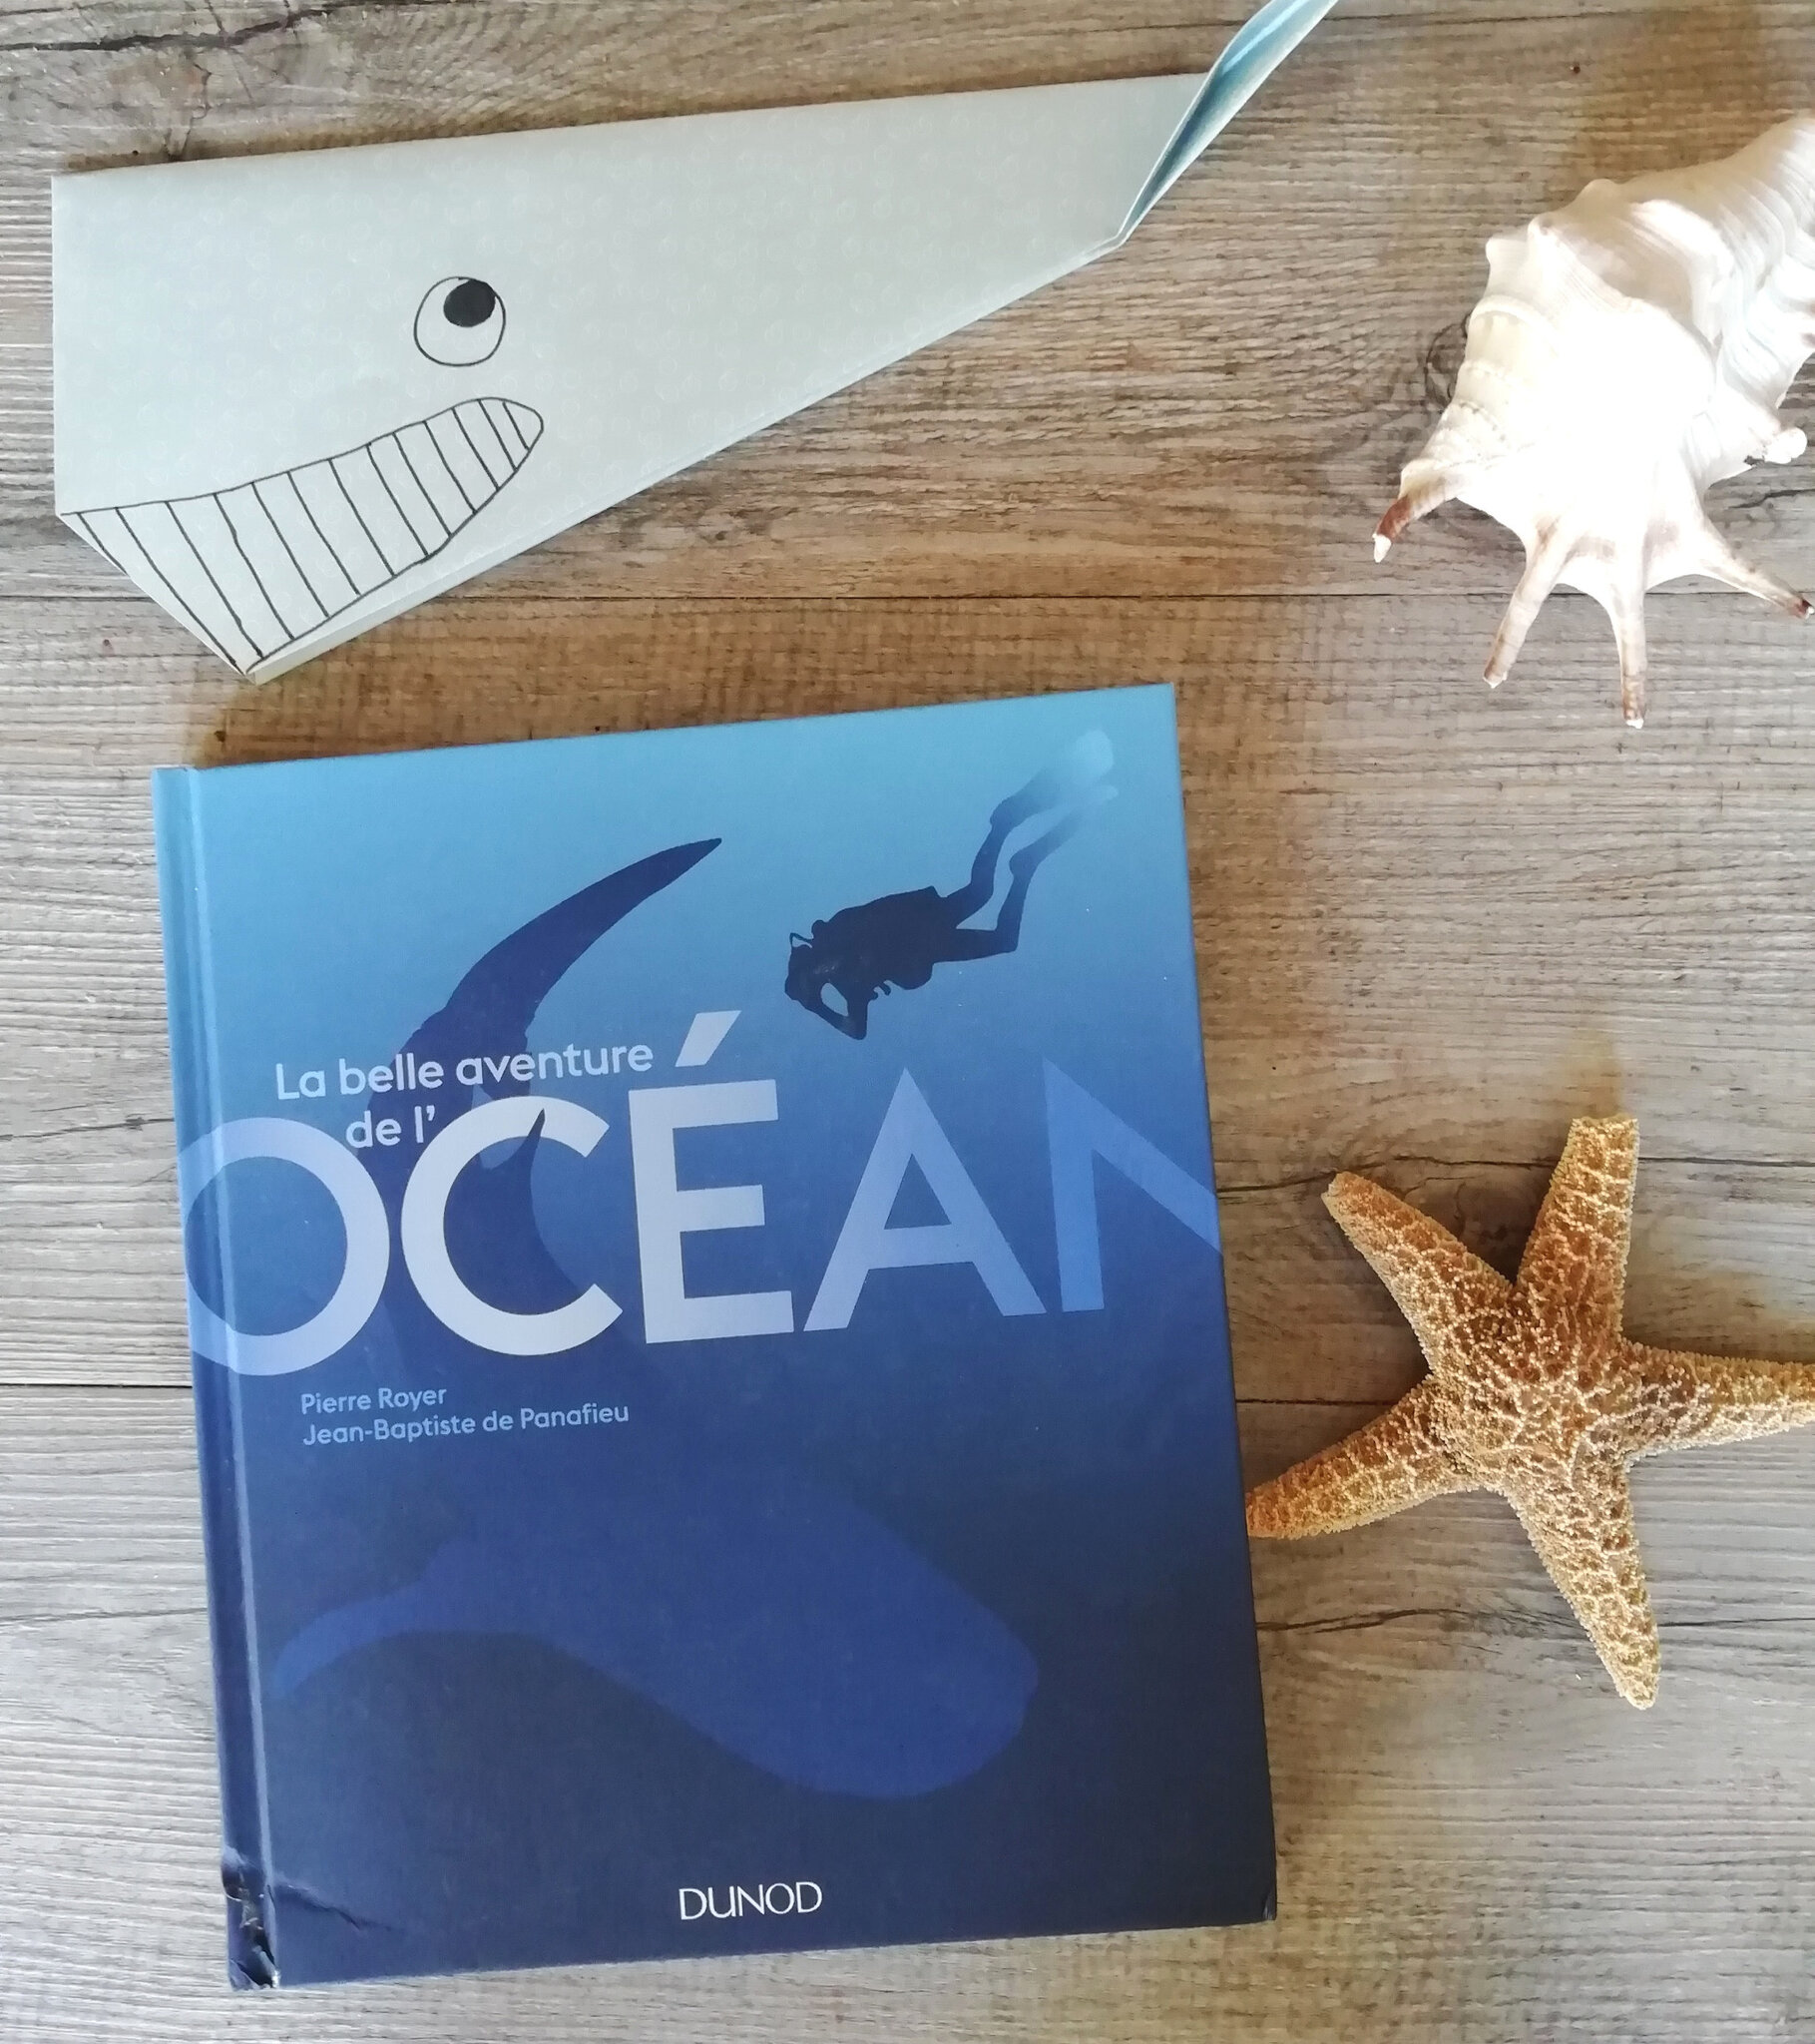 Beau Livre On Plonge Dans La Belle Aventure De L Ocean Baz Art Des Films Des Livres